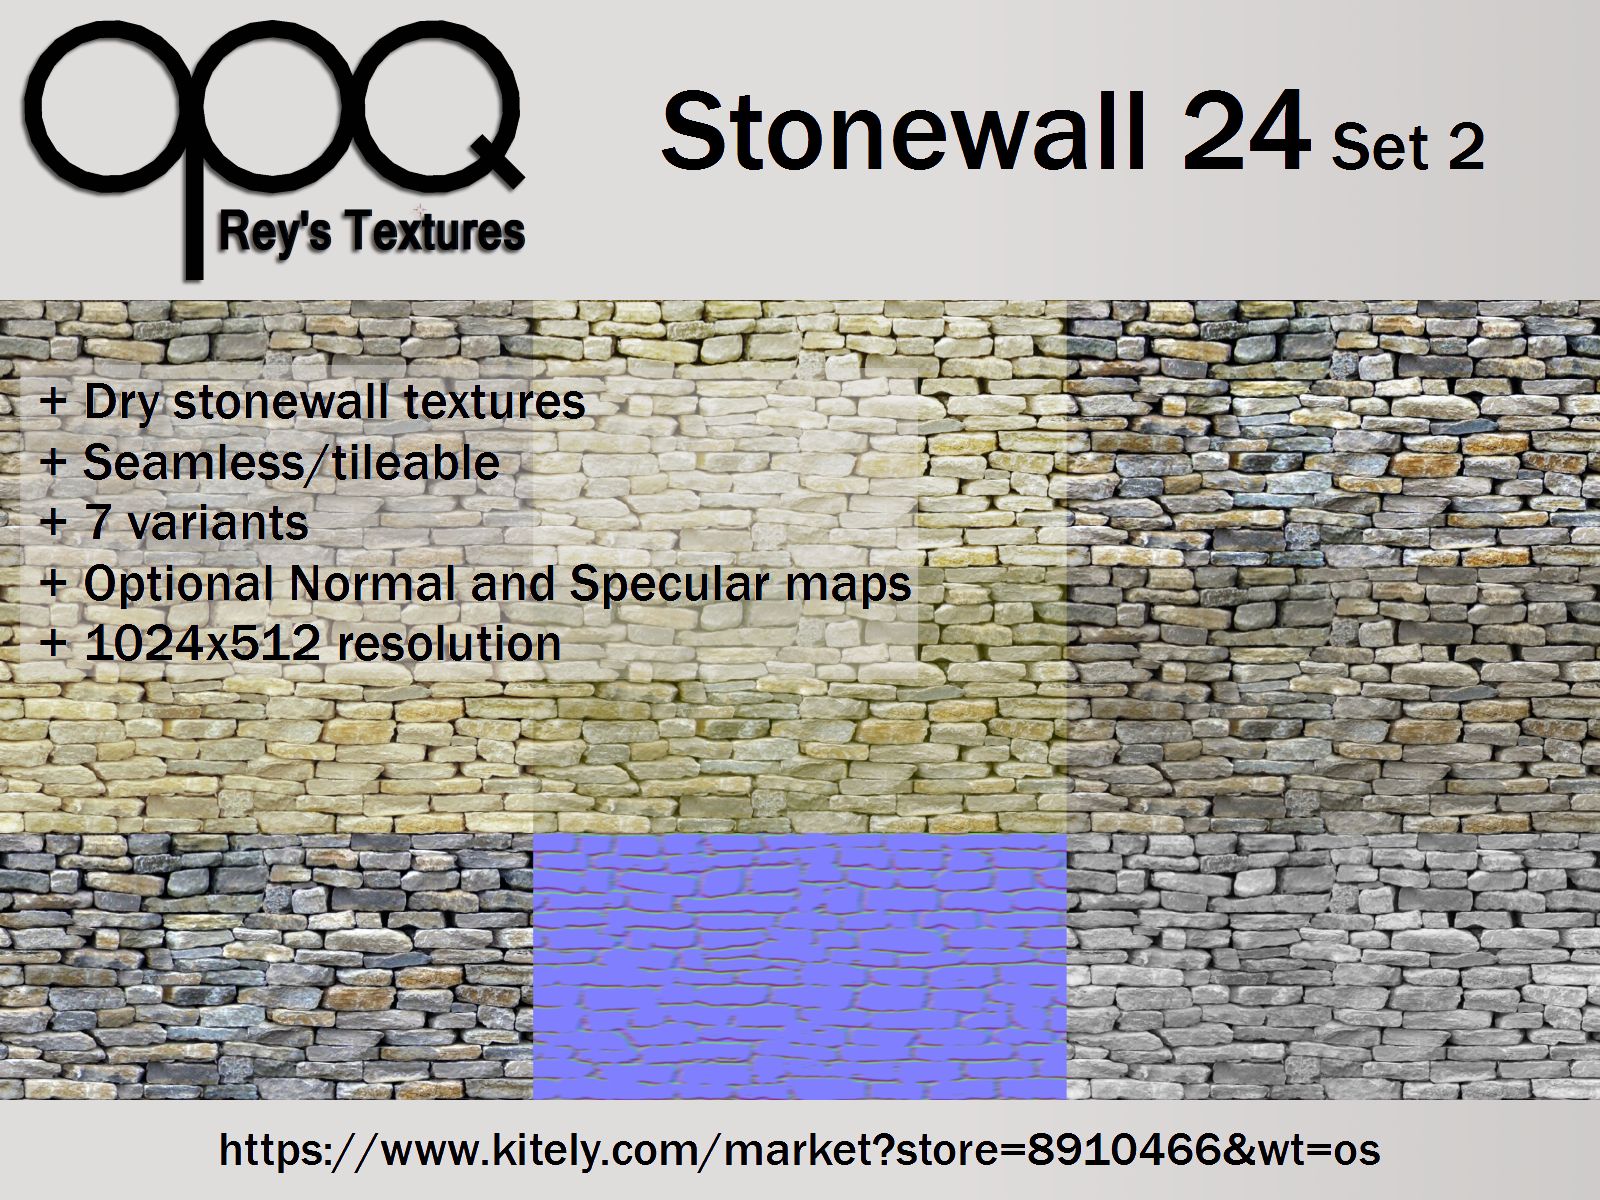 Rey's Stonewall 24 Set 2 Poster Kitely.jpg